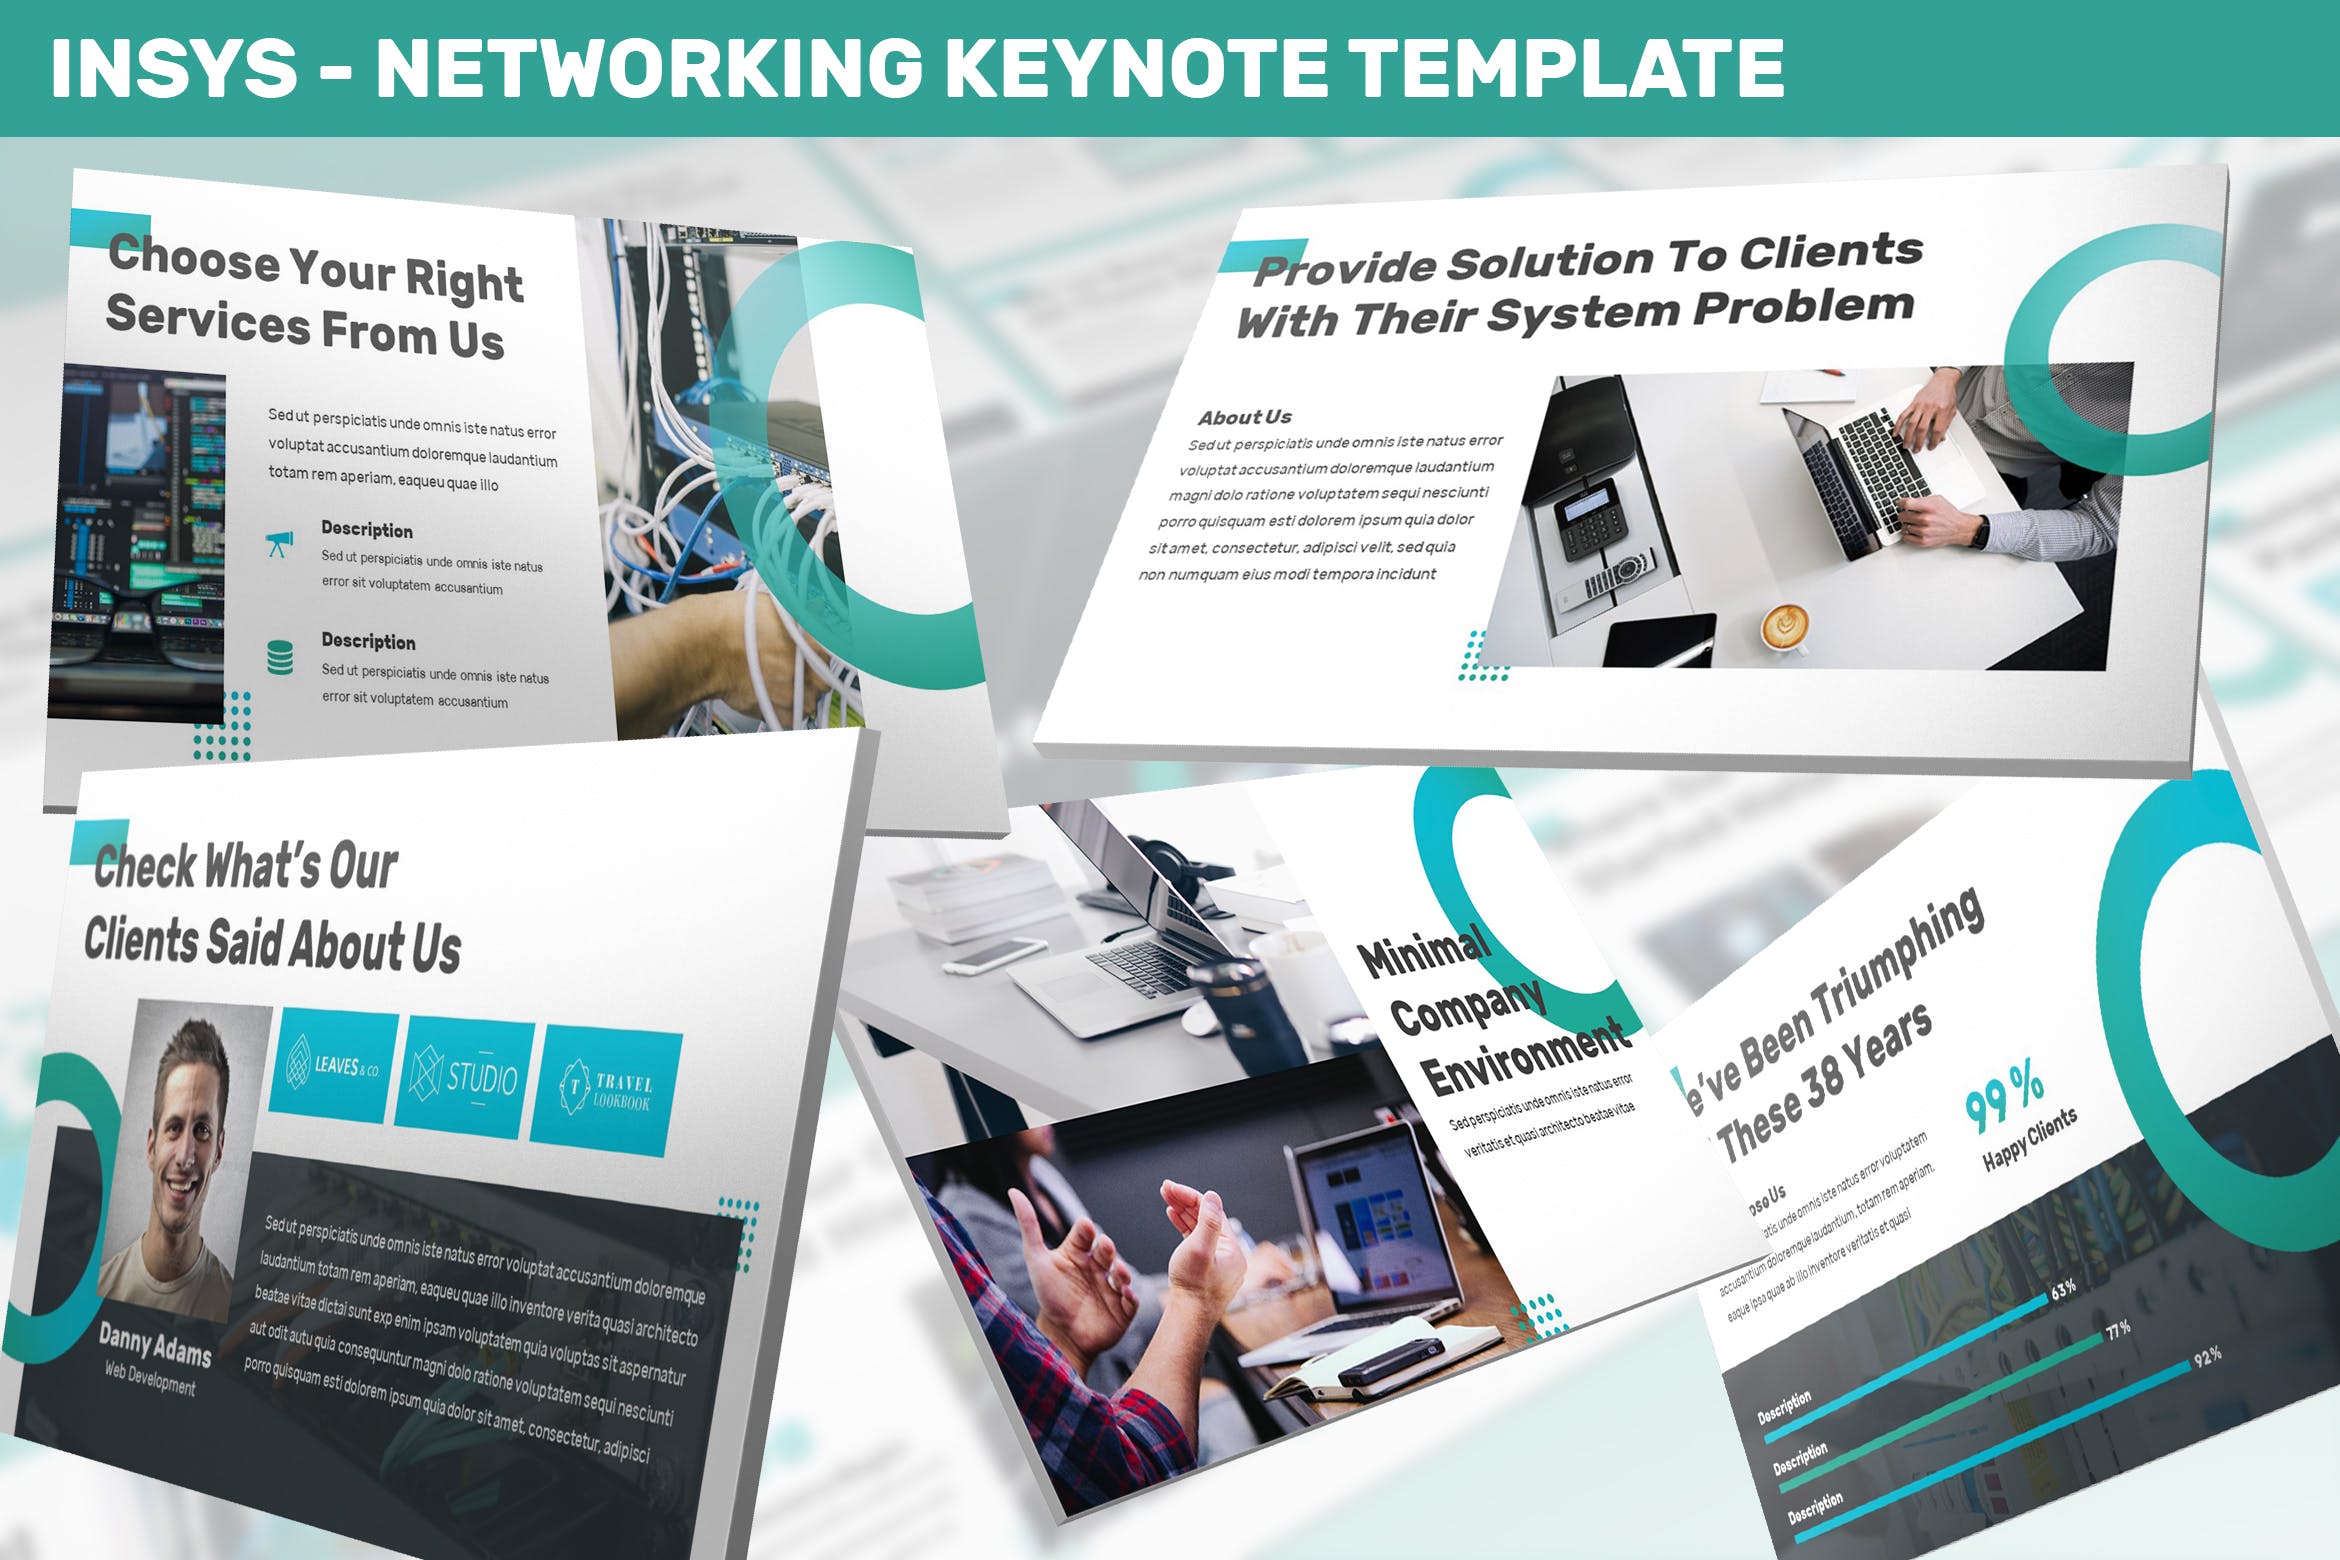 网络科技公司/技术/融资主题第一素材精选Keynote模板模板 Insys – Networking Keynote Template插图